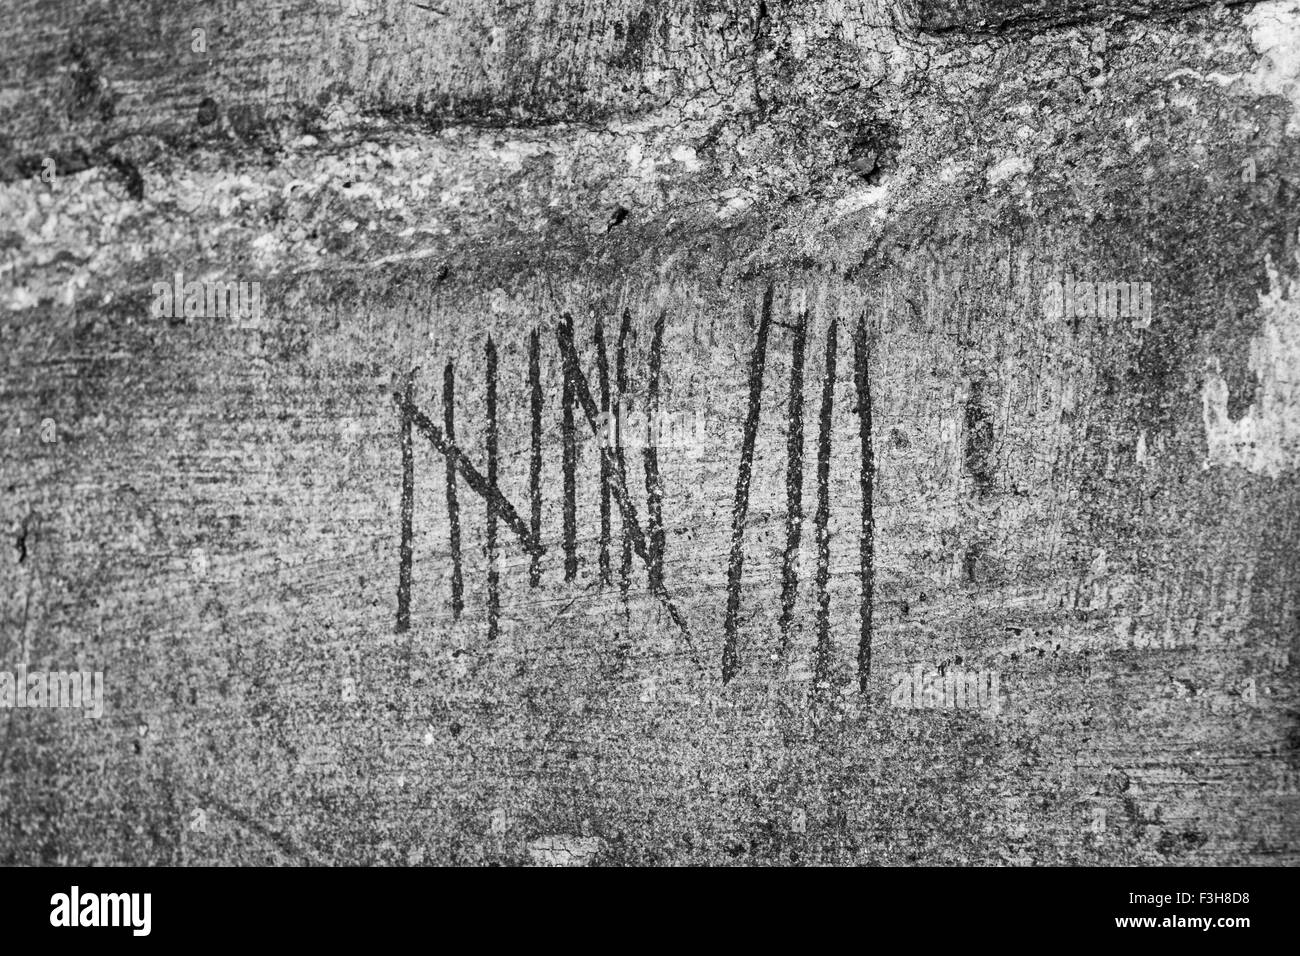 Tally marks on brick wall Stock Photo - Alamy